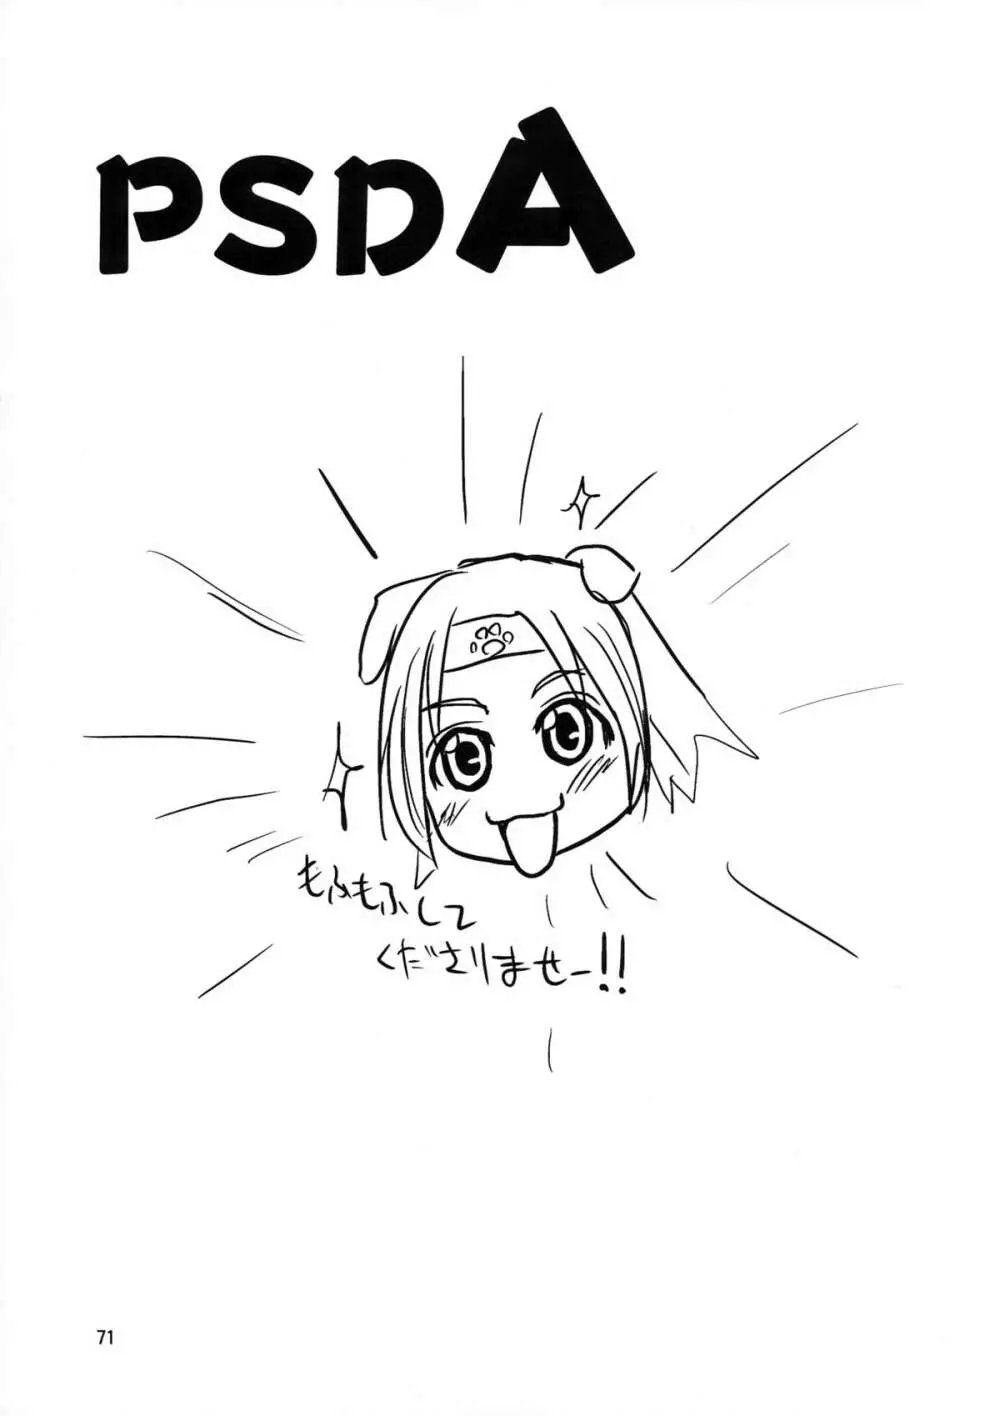 PSDA - page71